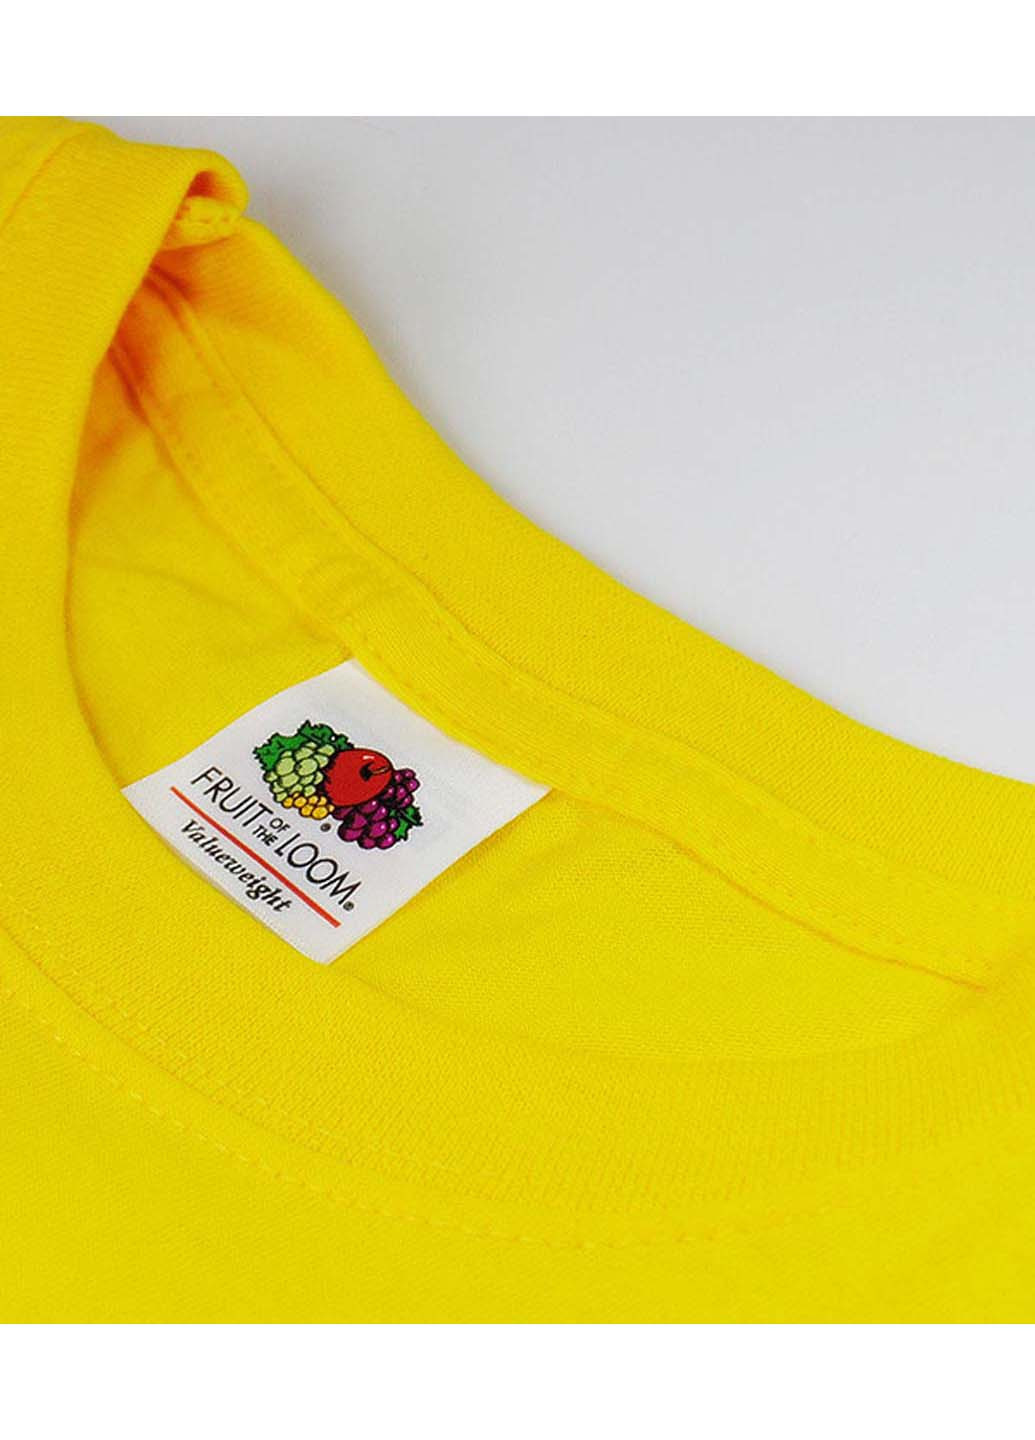 Желтая футболка Fruit of the Loom ValueWeight